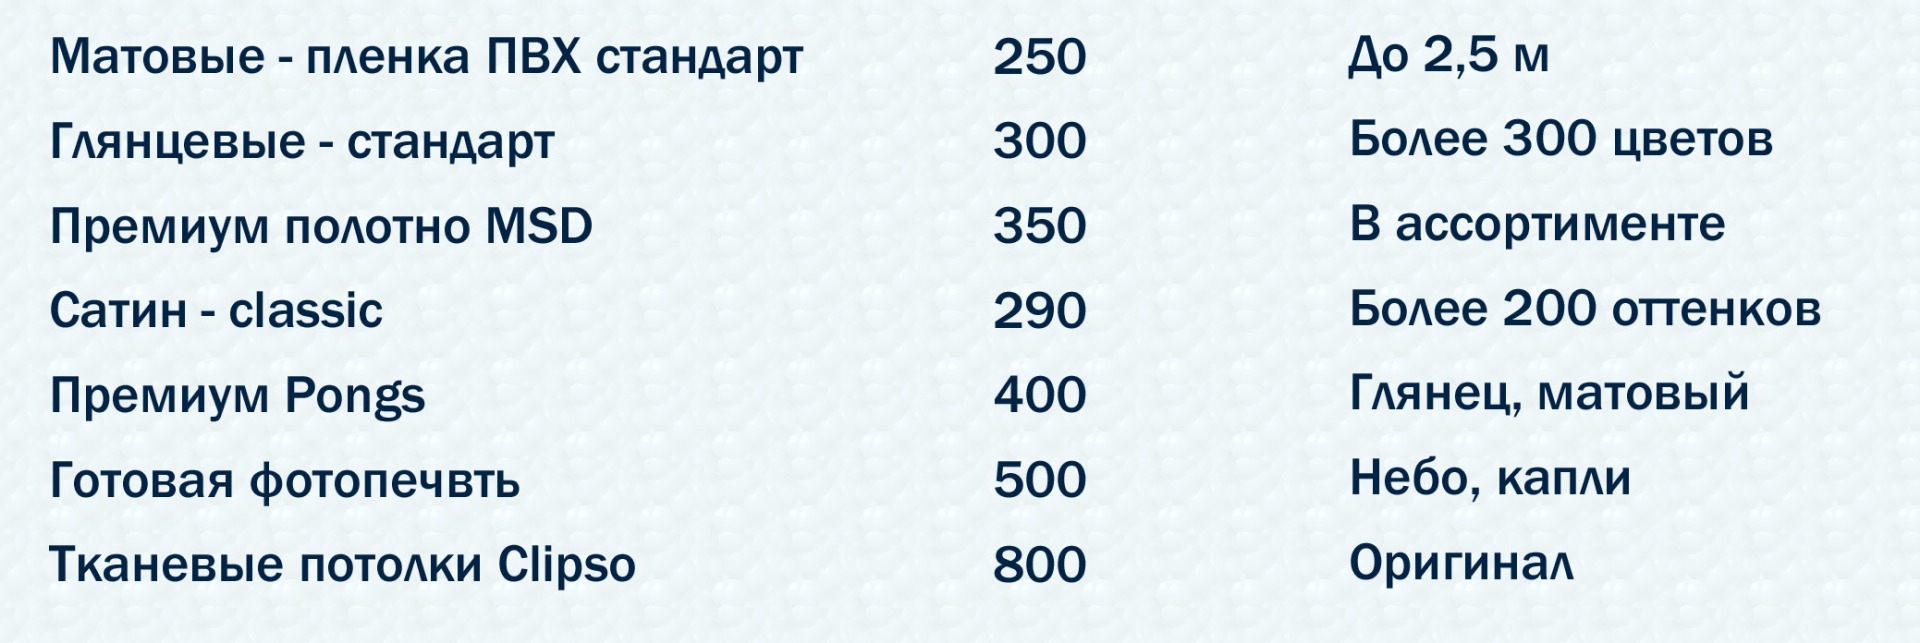 Прайс-лист на натяжные потолки в Кропоткине 2019 и 2020 год 